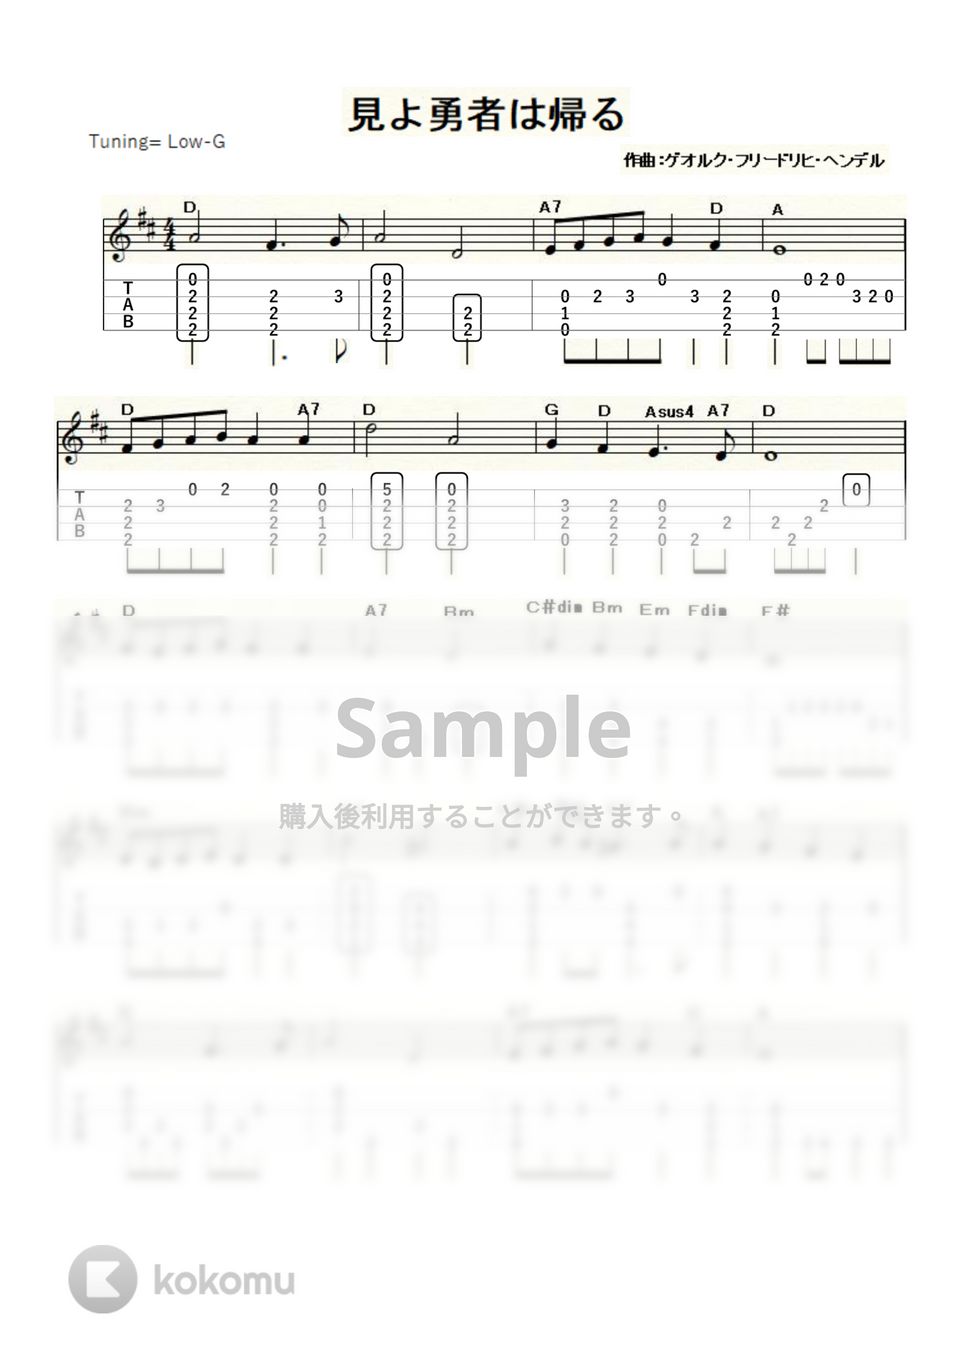 ヘンデル - 見よ勇者は帰る～表彰式の定番曲～ (ｳｸﾚﾚｿﾛ / Low-G / 中級) by ukulelepapa